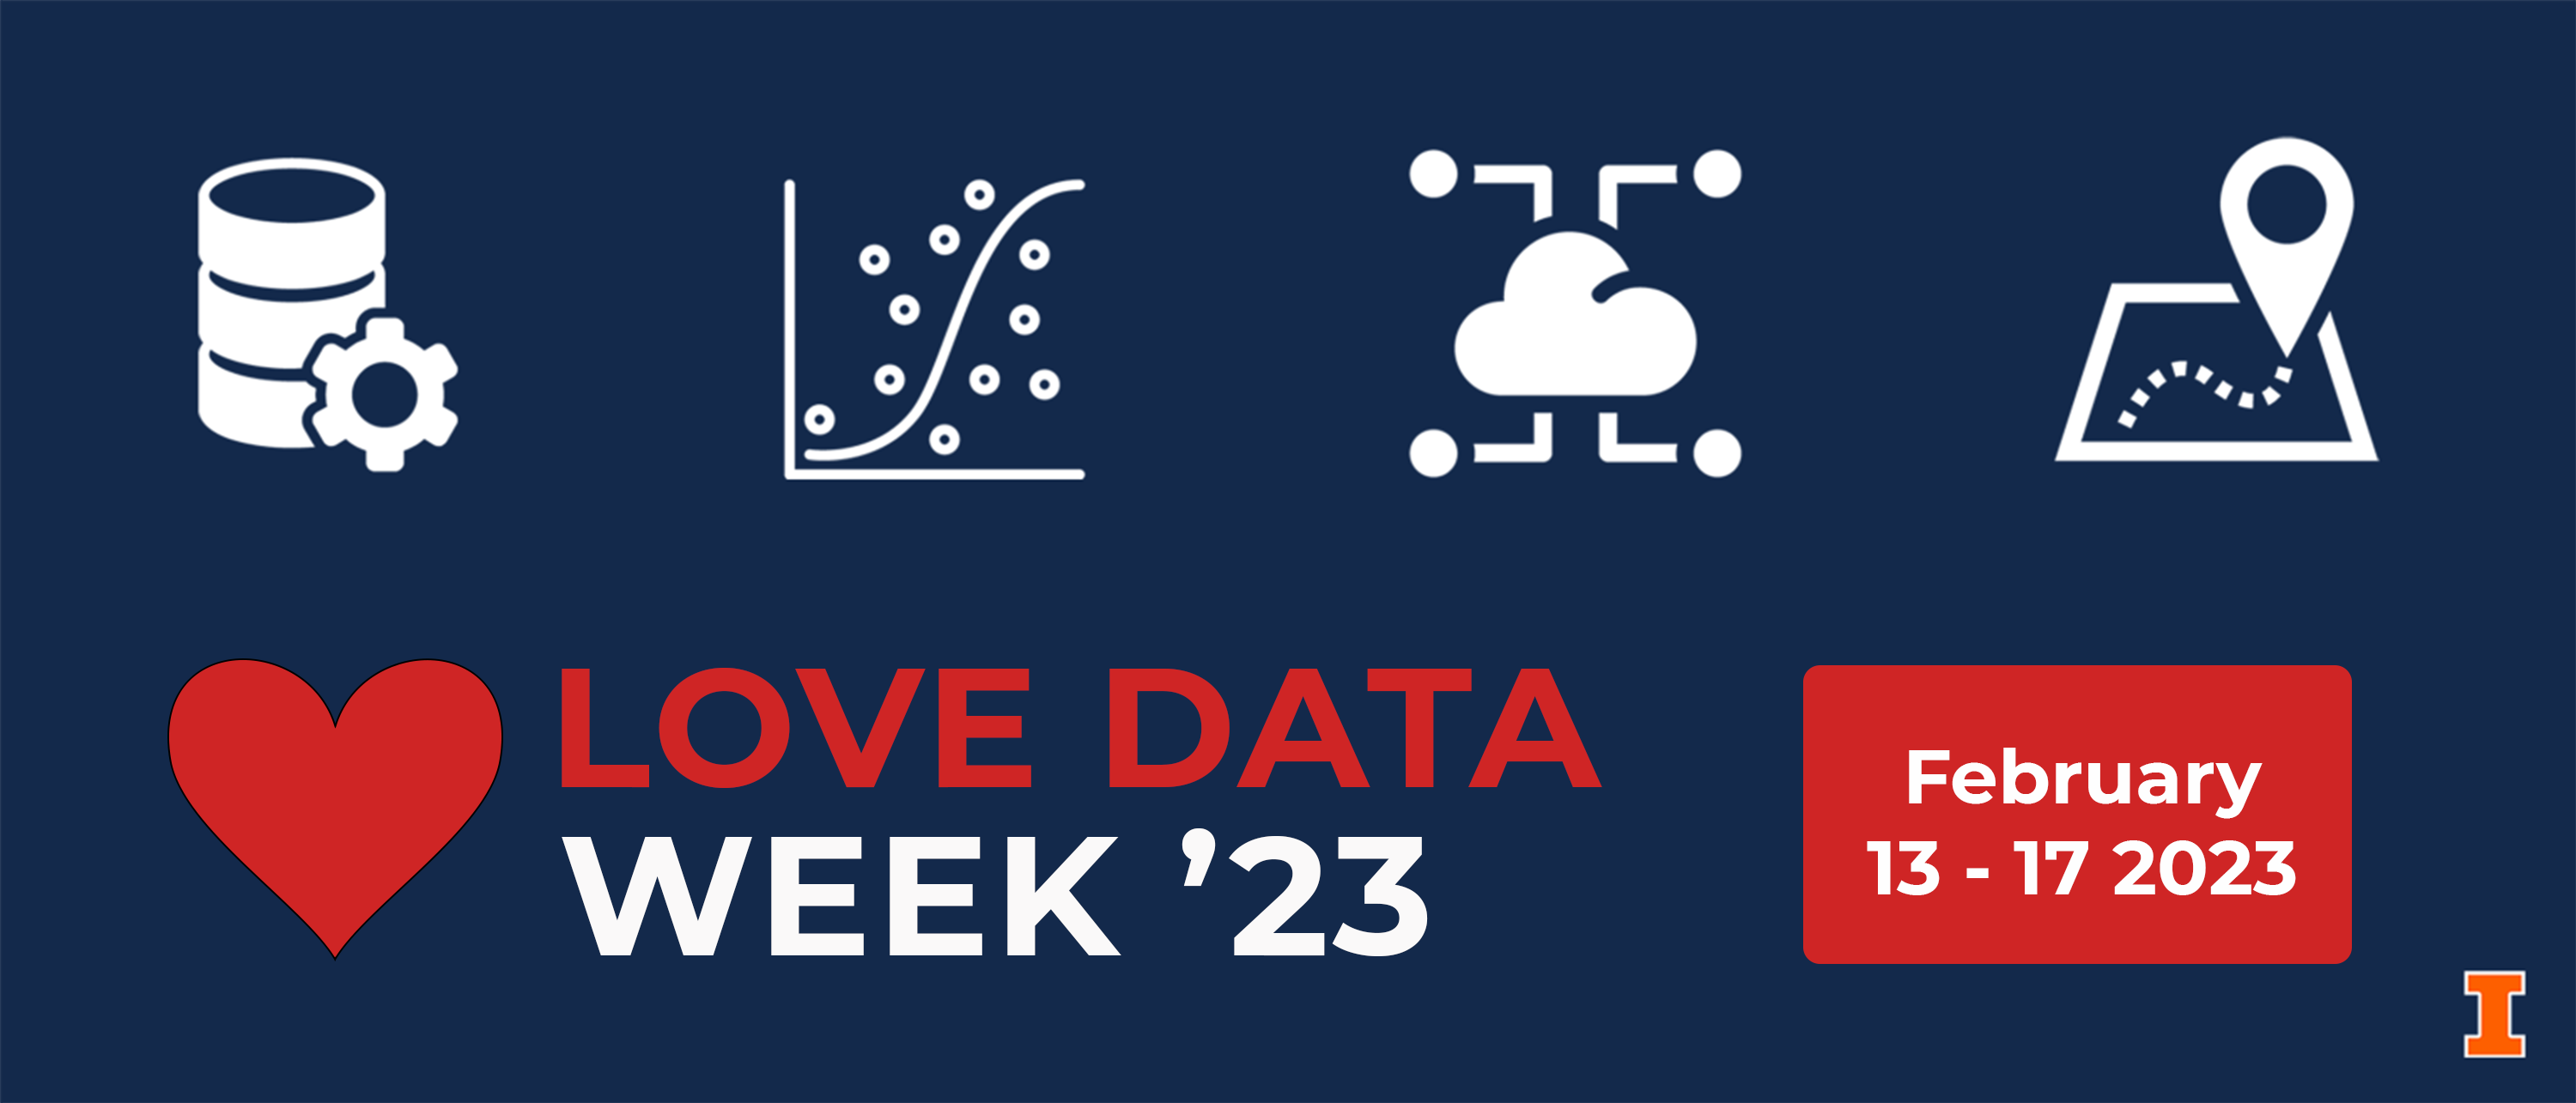 Love Data Week 2023. February 13 - 17, 2023